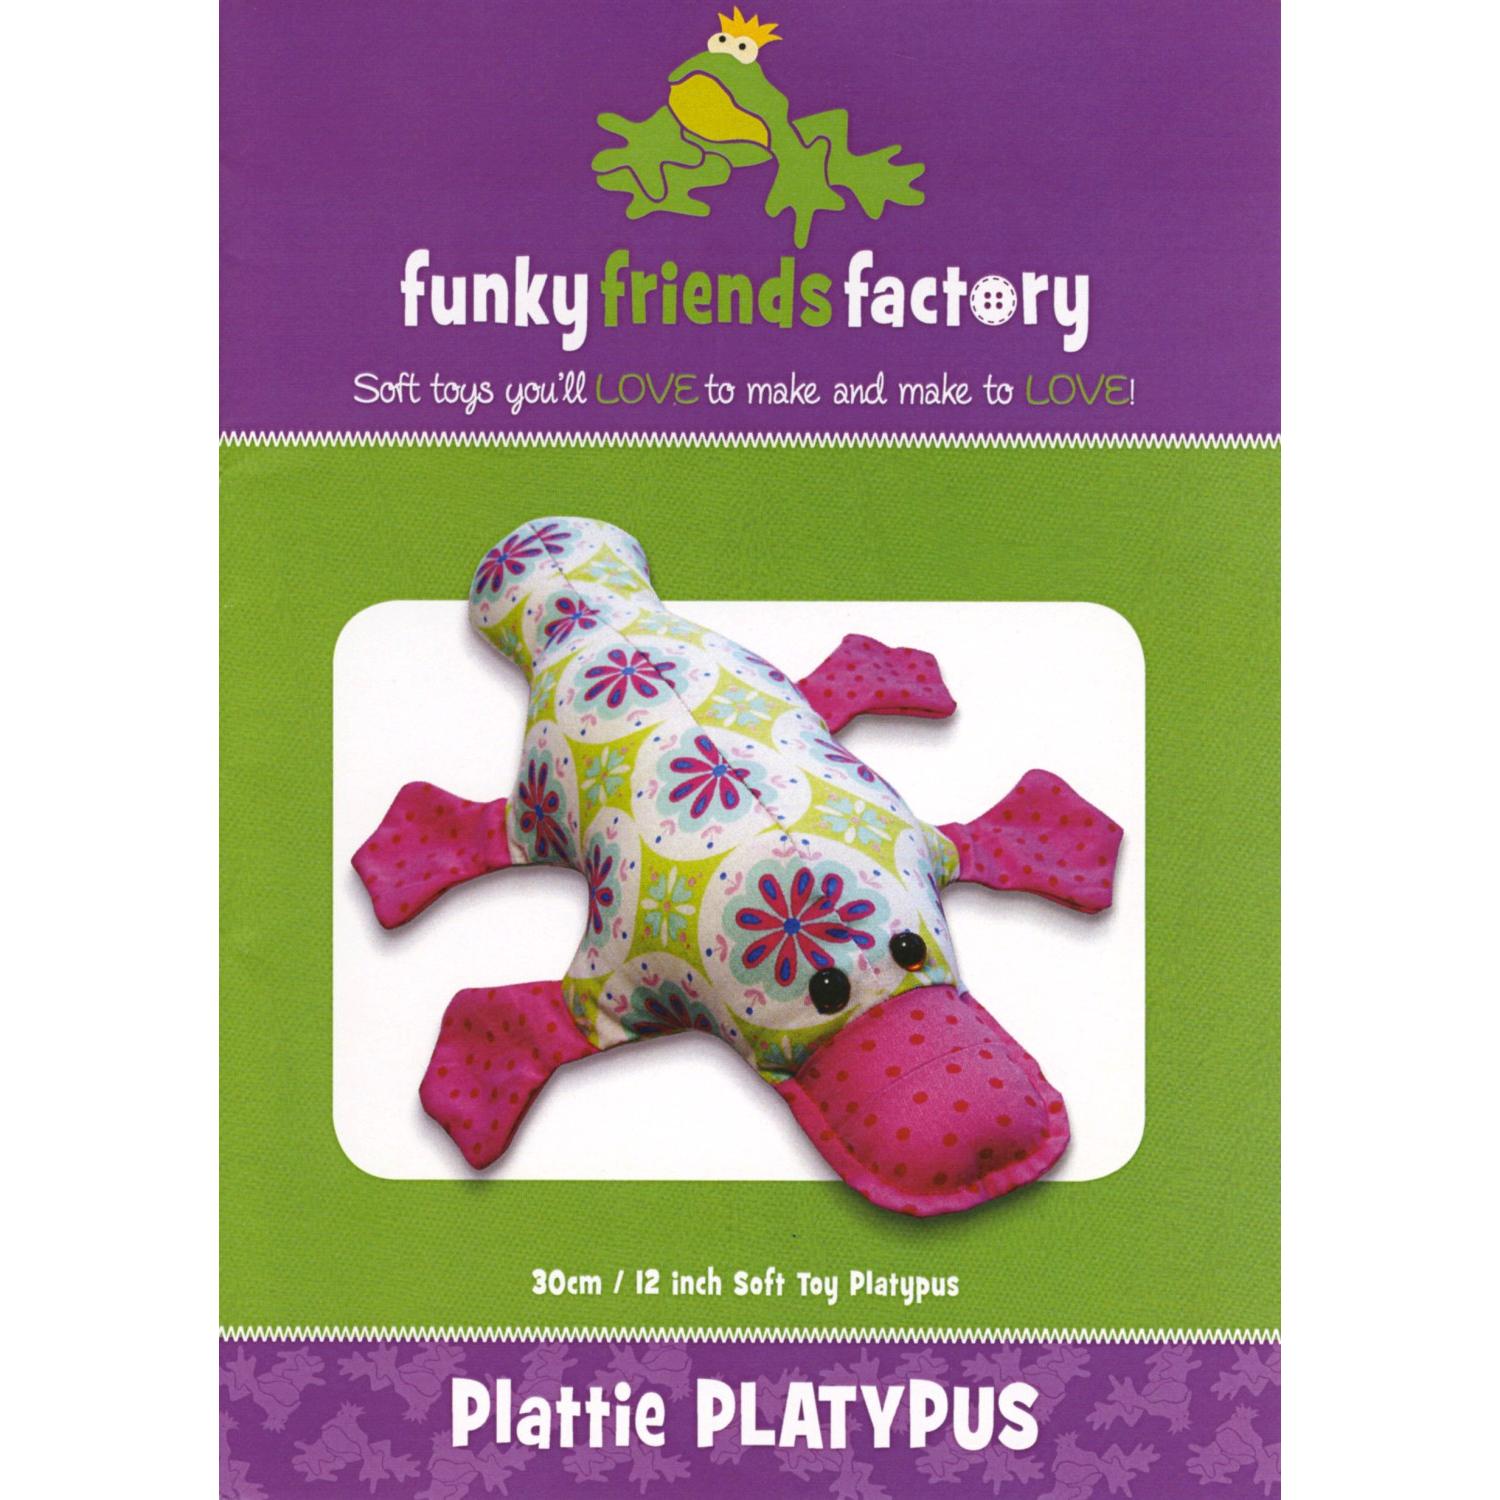 Plattie Platypus Funky Friends Factory Pattern